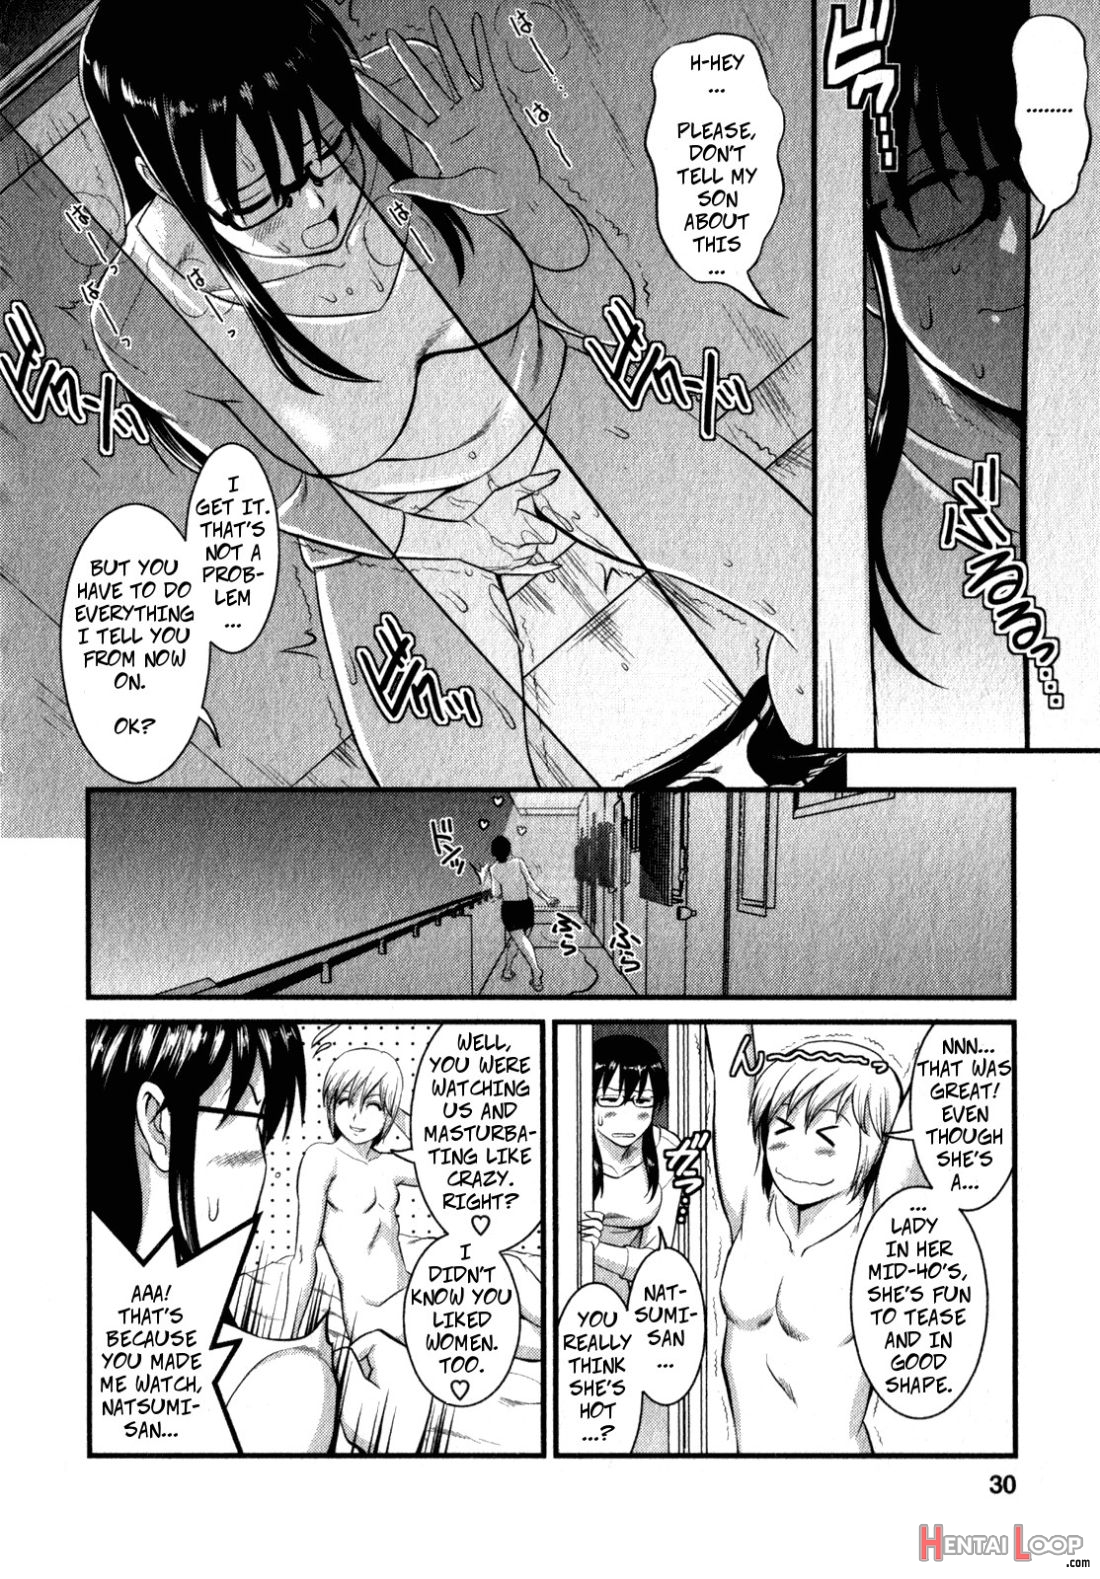 Shizuko-san's Story page 9